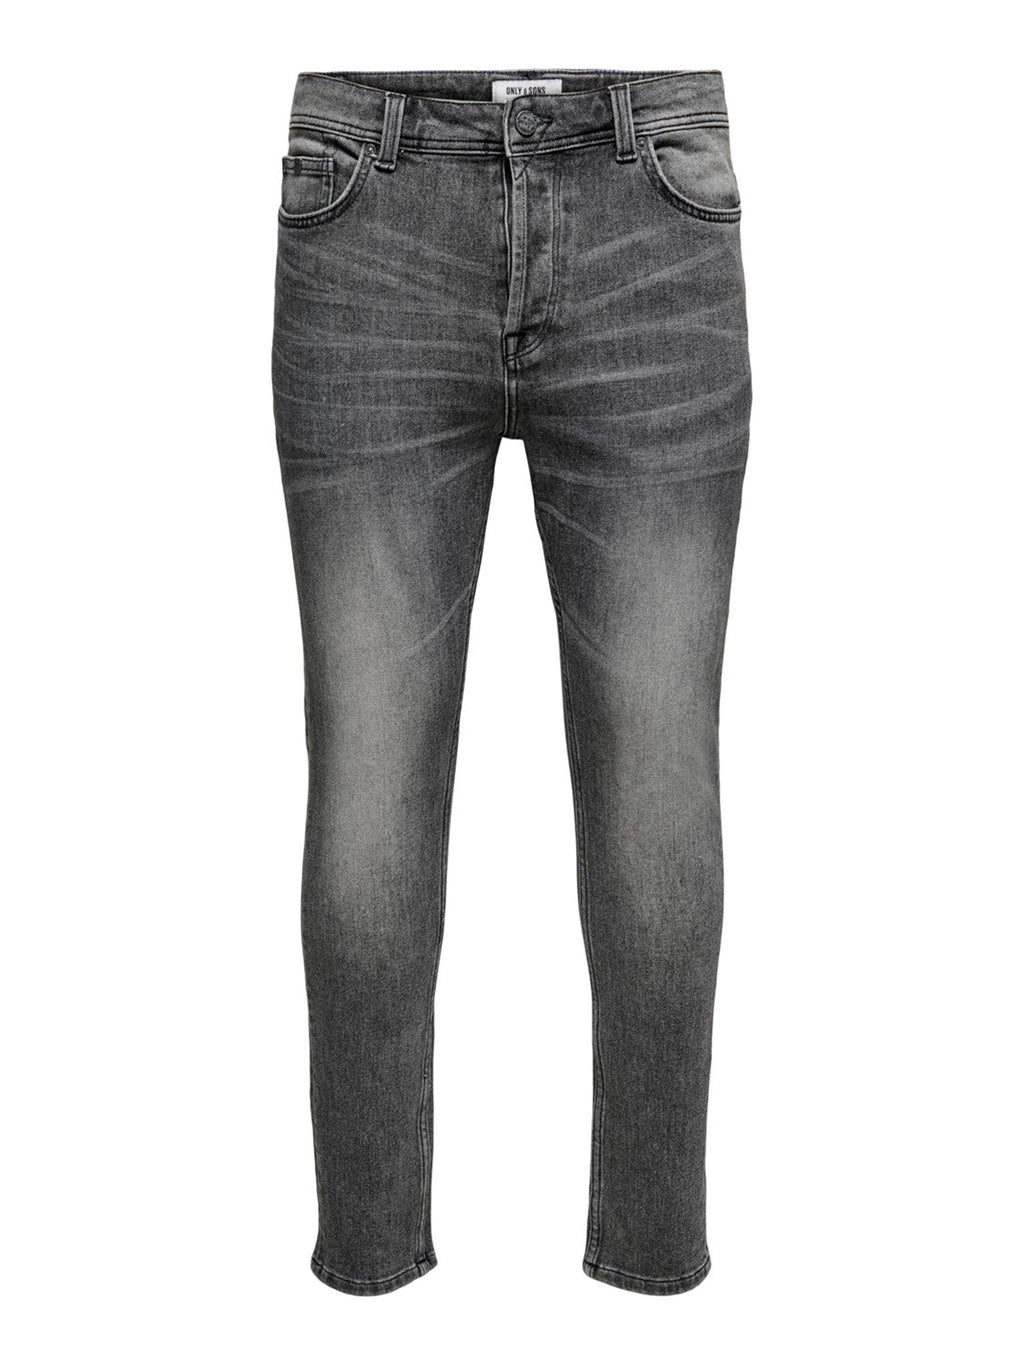 Jeans sottili della vita di telaio - denim grigio